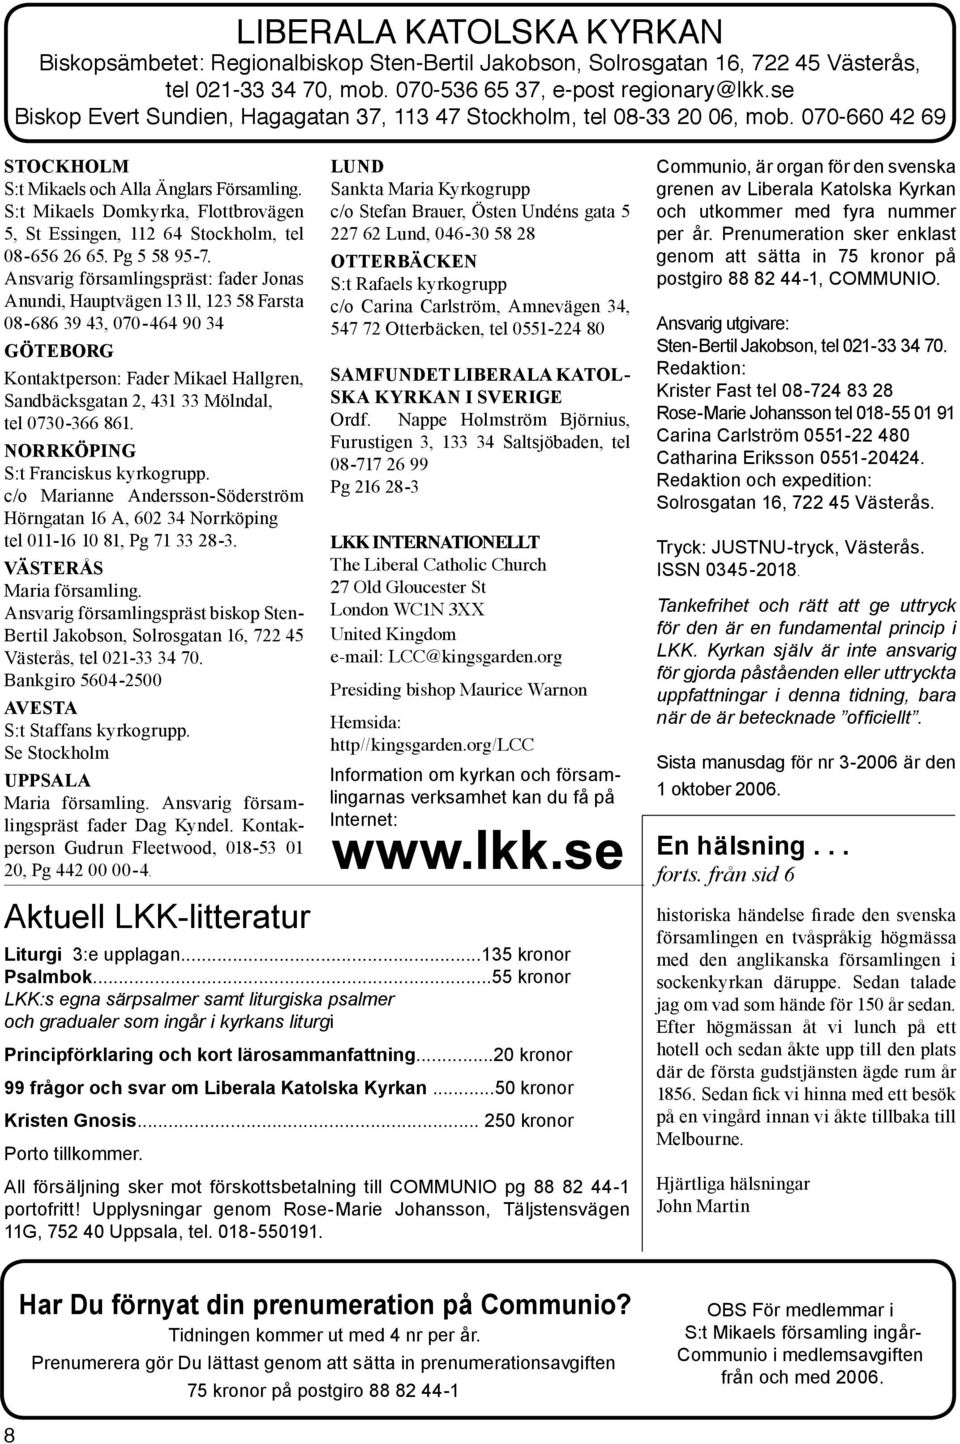 S:t Mikaels Domkyrka, Flottbrovägen 5, St Essingen, 112 64 Stockholm, tel 08-656 26 65. Pg 5 58 95-7.